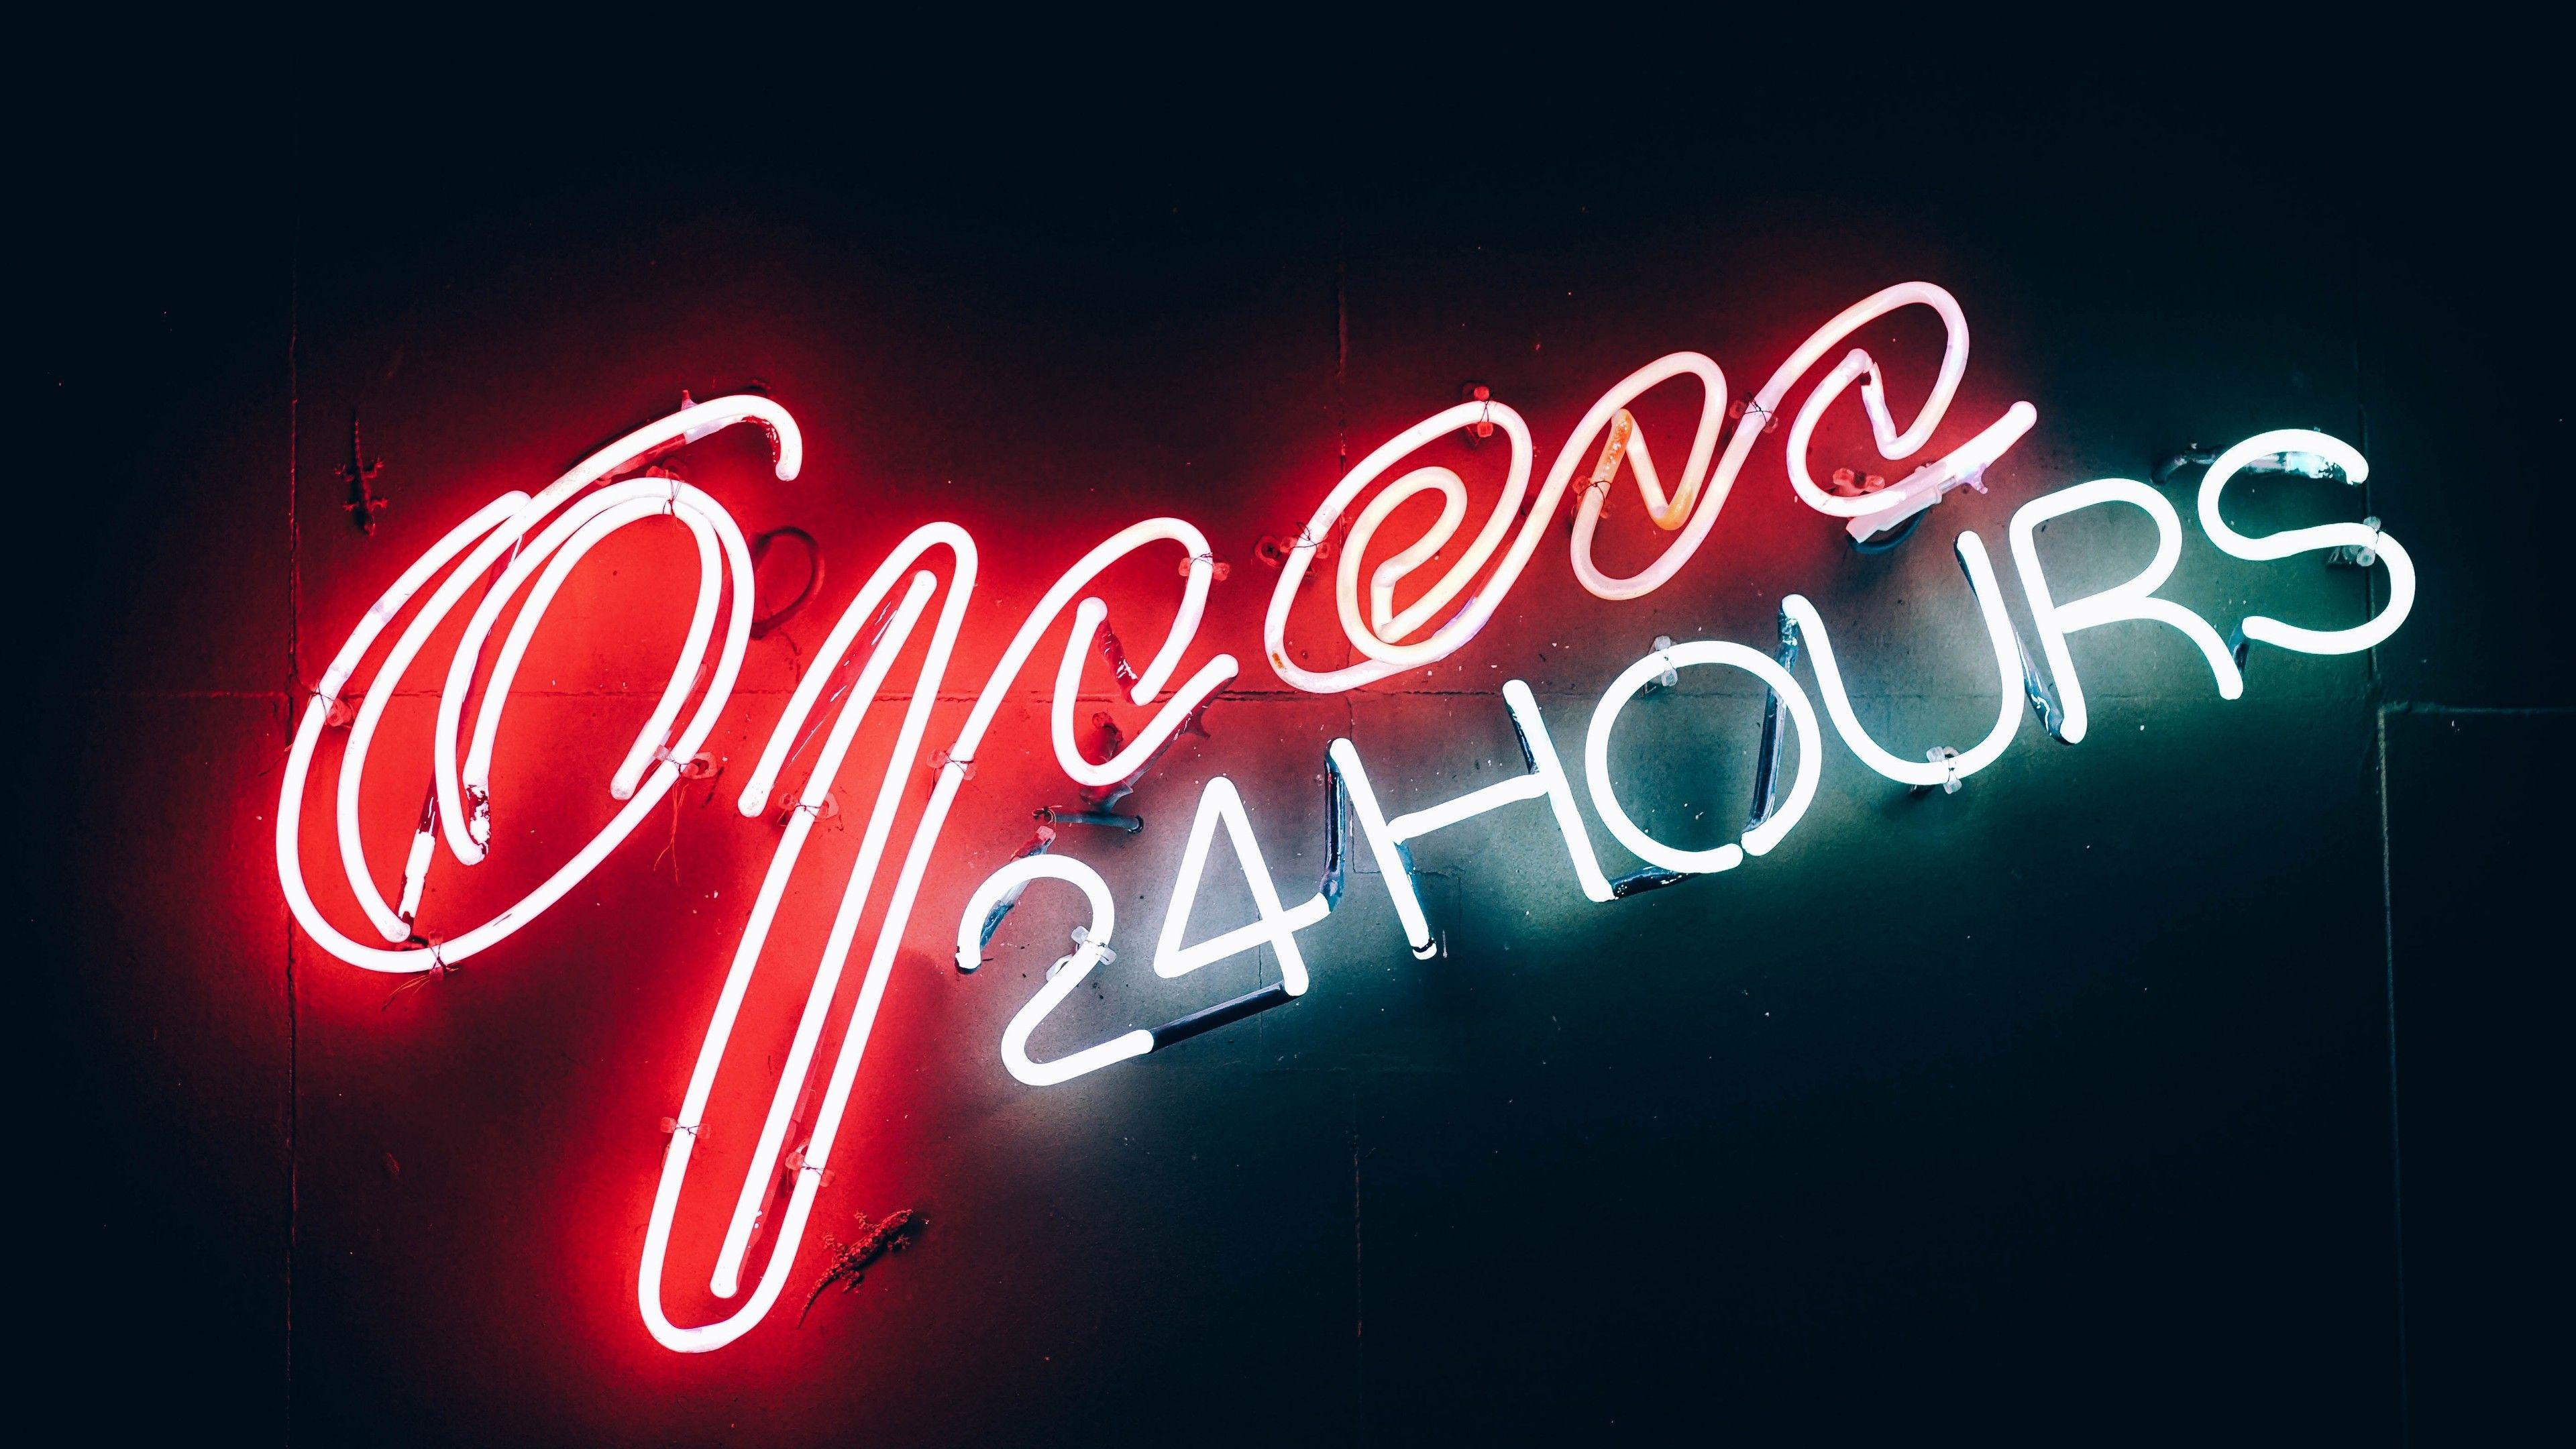 Open 24 Hours Neon Sign Wallpaper. Wallpaper Studio 10